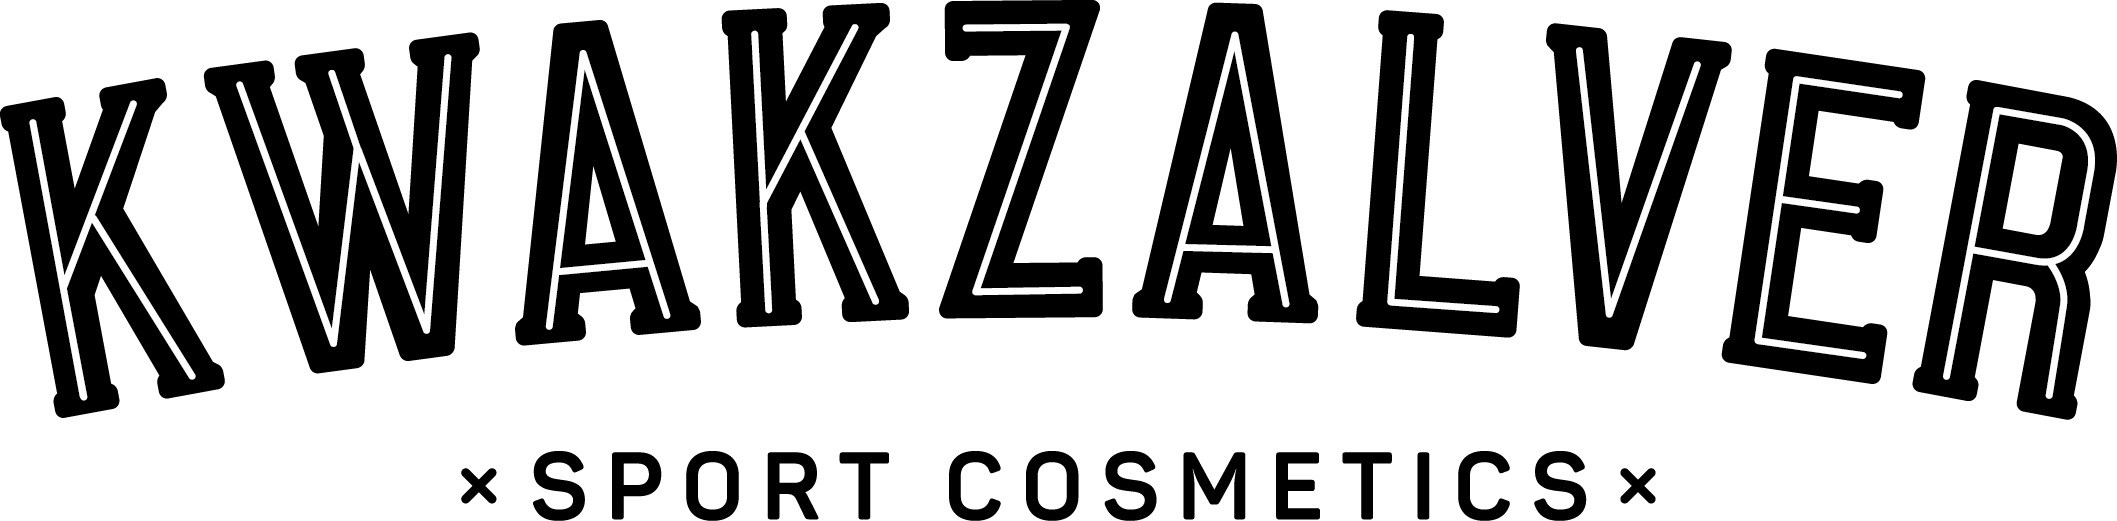 Kwakzalver Sports Logo